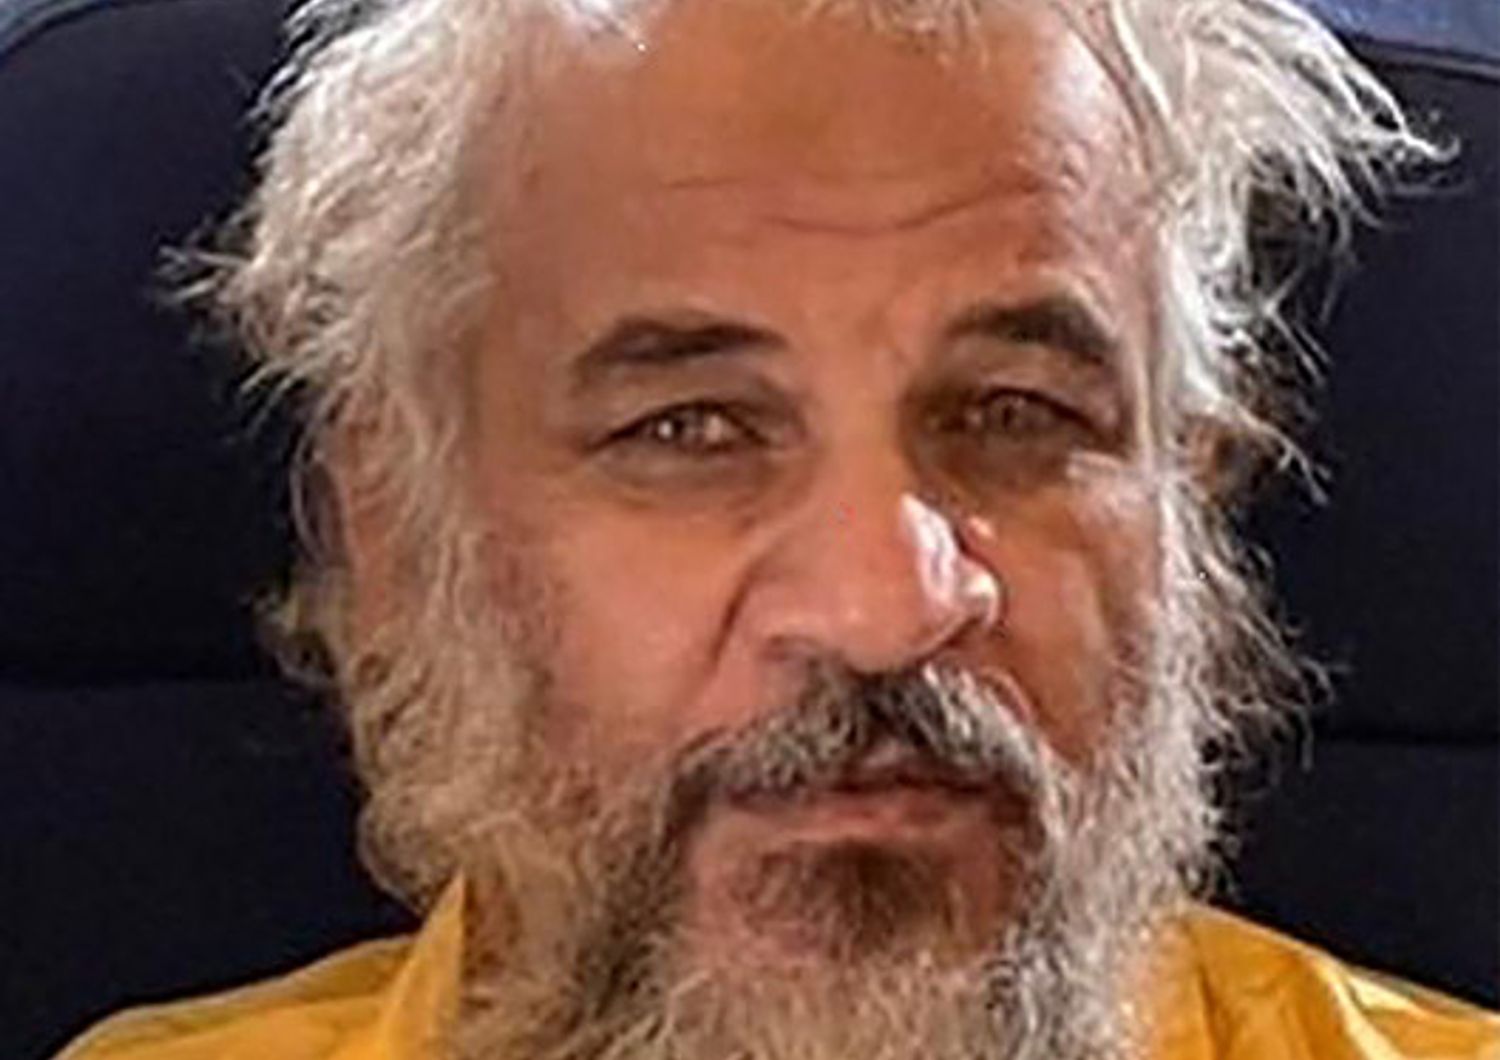 Sami Jasim al-Jaburi tesoriere Isis